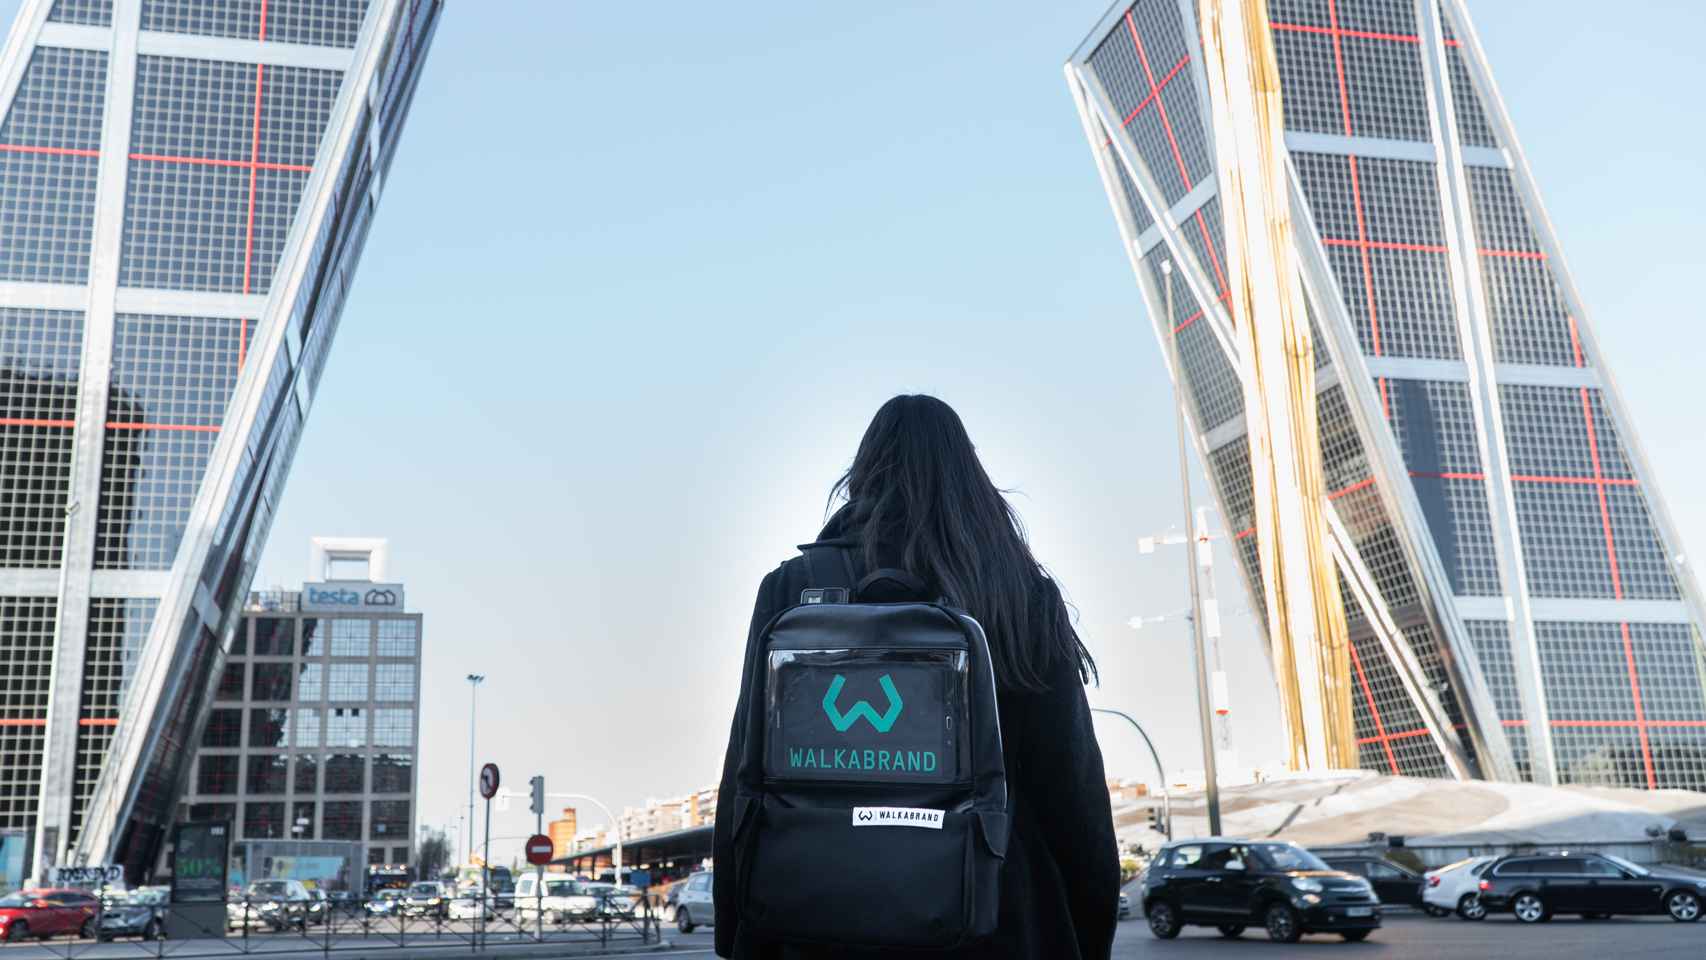 La mochila de Walkabrand lleva incorporada una tablet en la que se emite publicidad.